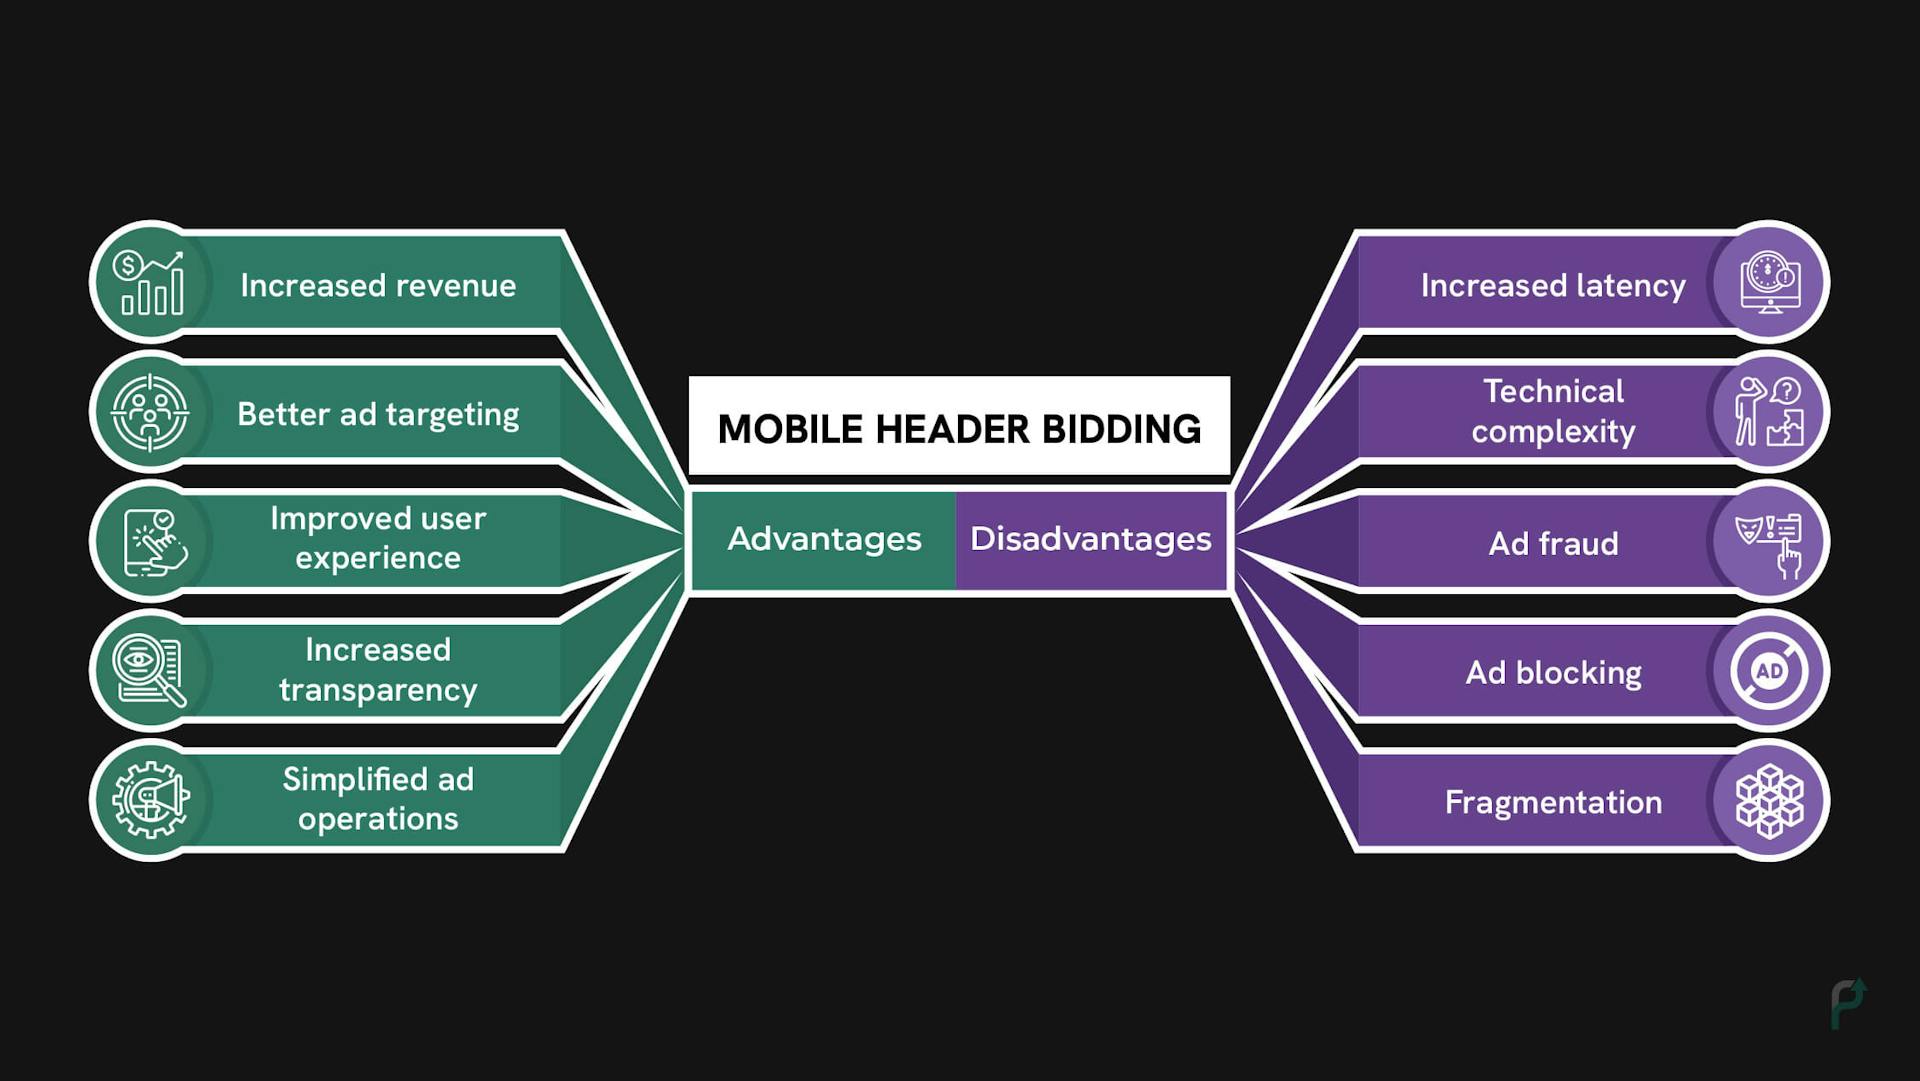 Advantages and disadvantages of Mobile Header Bidding